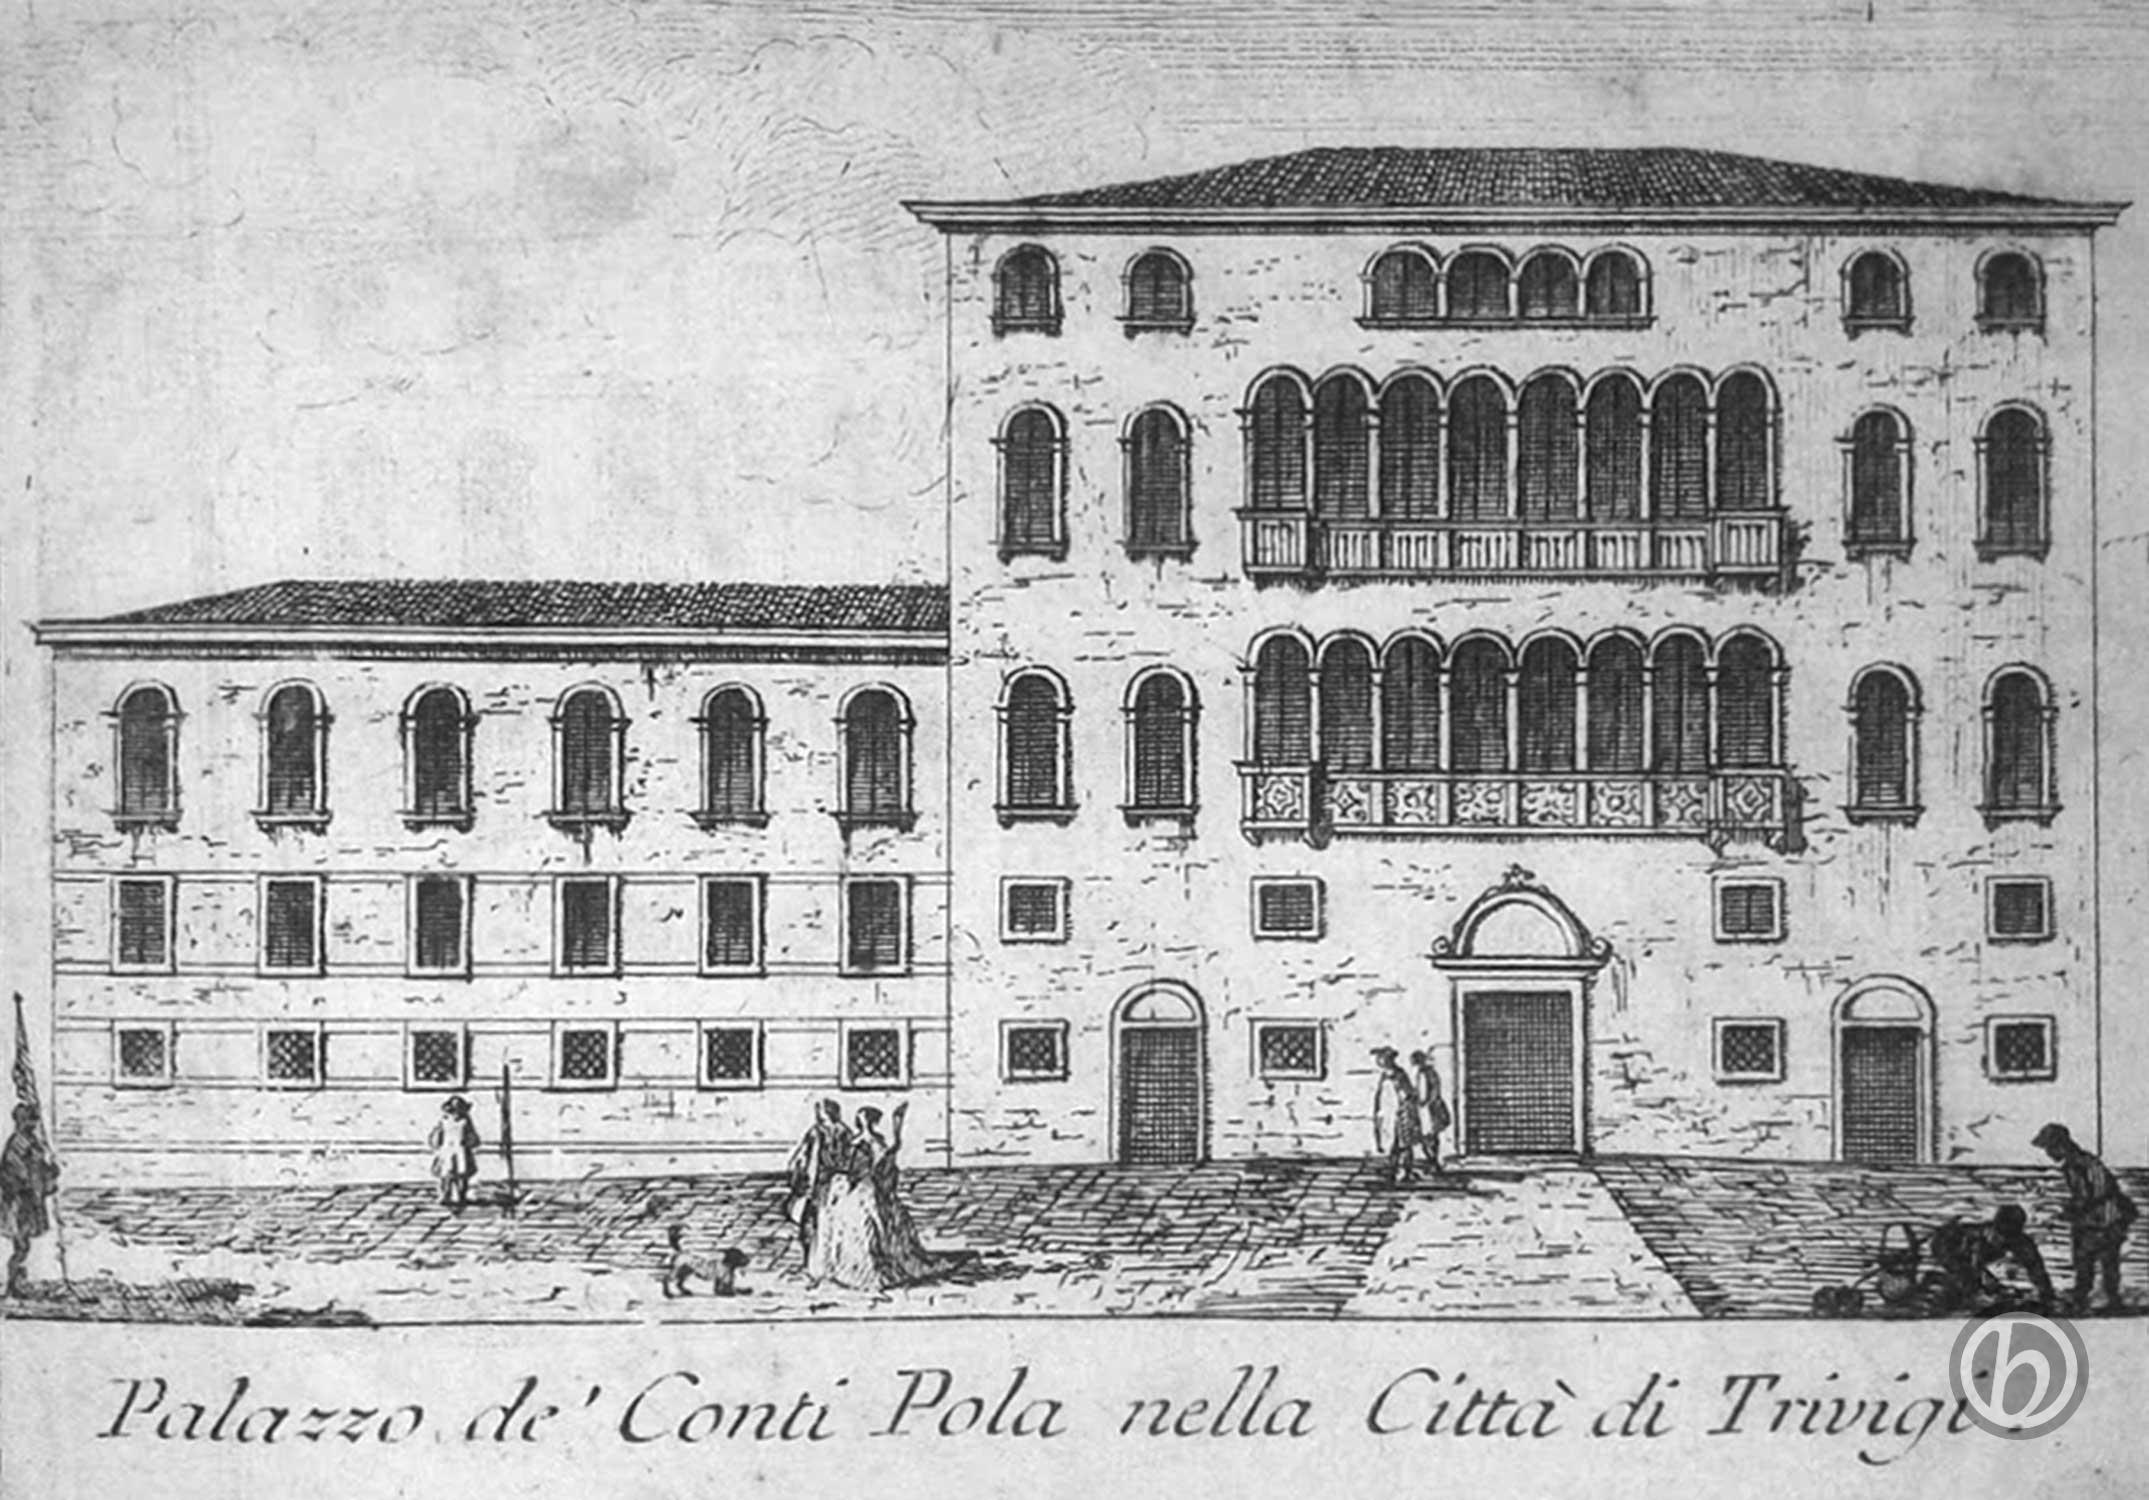 Palazzo de' Conti Pola nella Città di Trivigi,1810